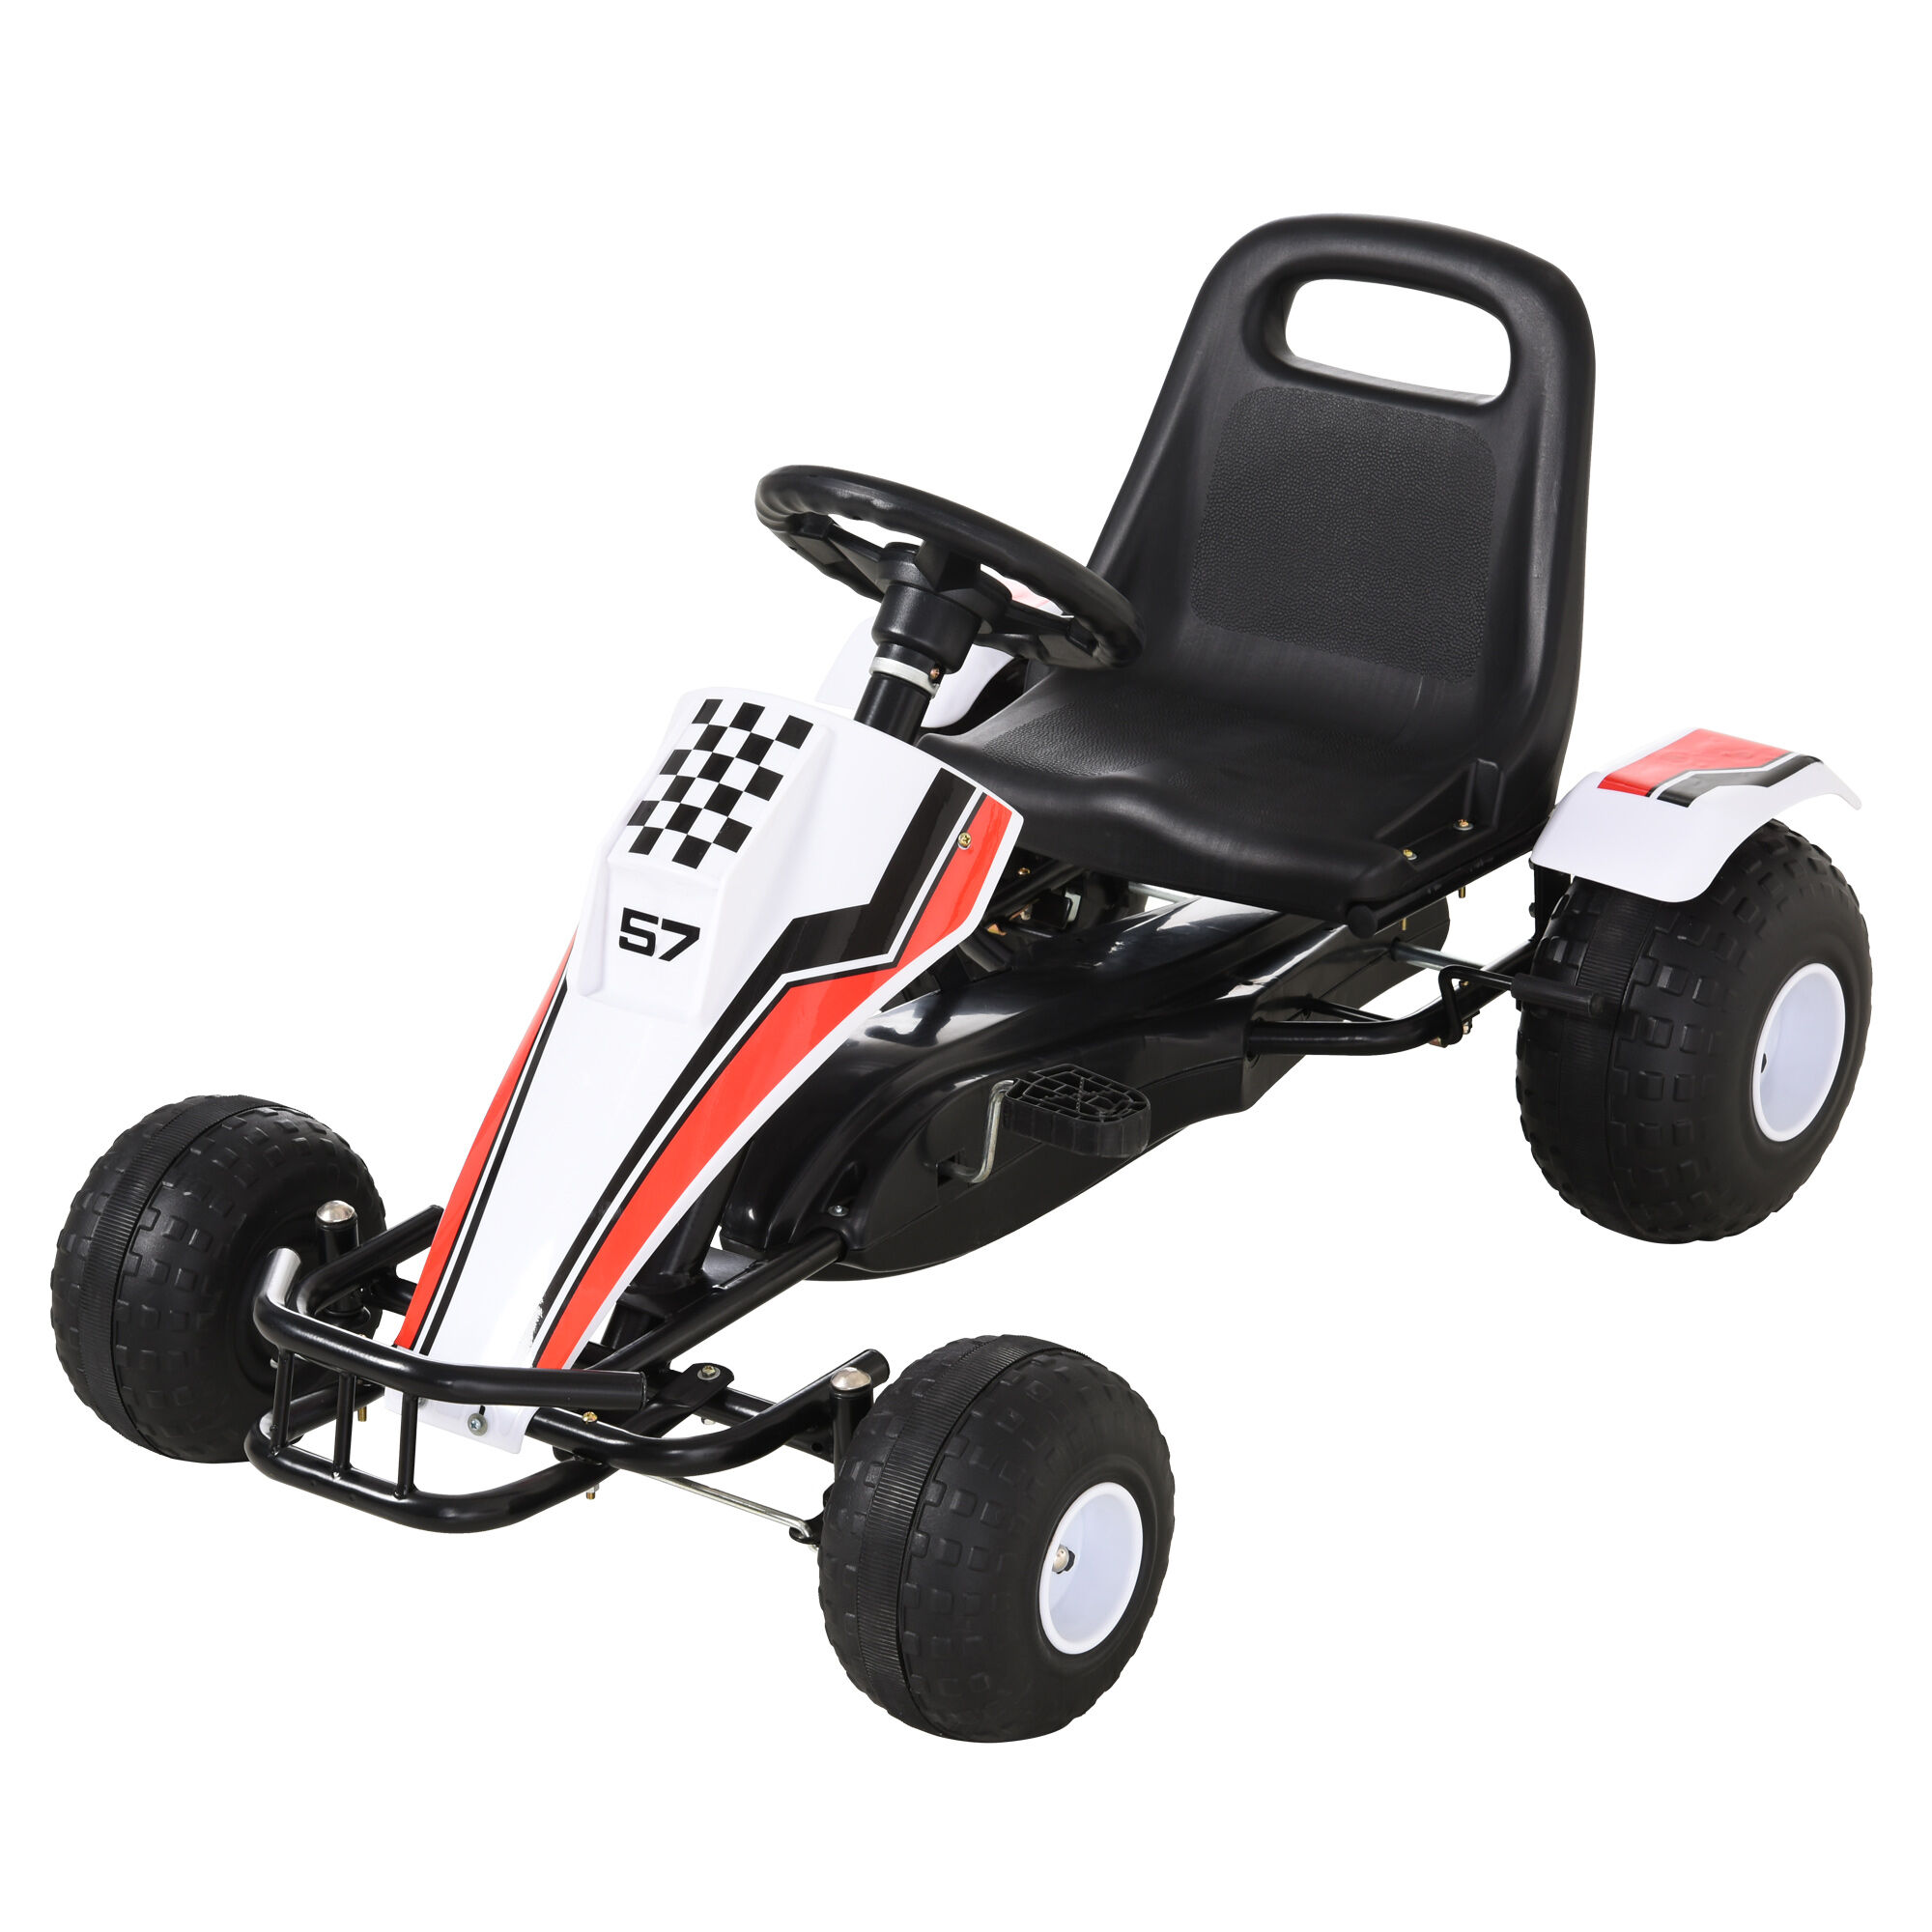 Homcom Go-Kart a Pedali Bianco per Bambini 3-8 Anni con Sedile Regolabile, Ruote in Plastica, Freno a Mano e Cambio